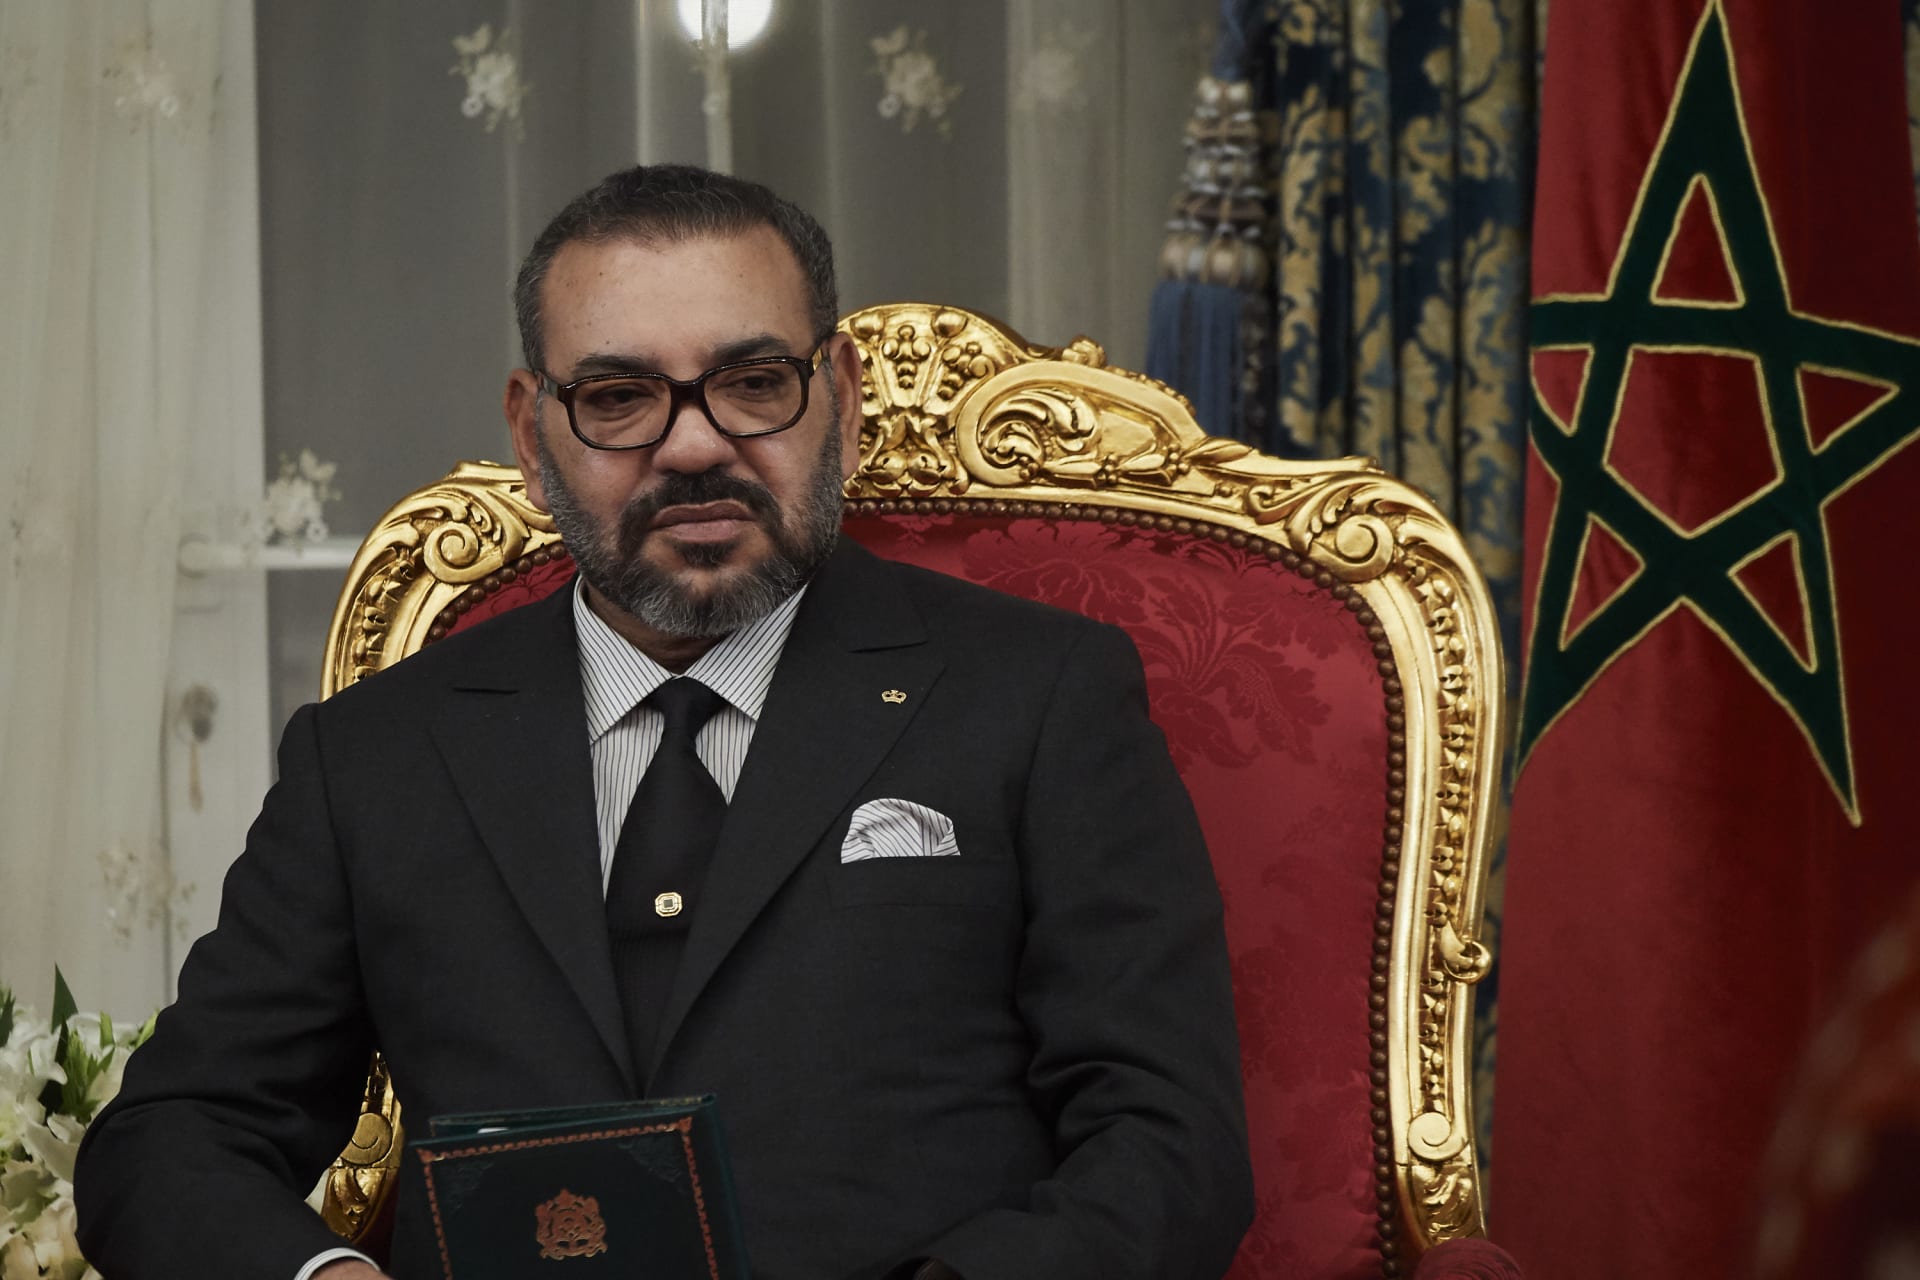 ملك المغرب يثير تفاعلا بتصريح عن الجزائر والعلاقات